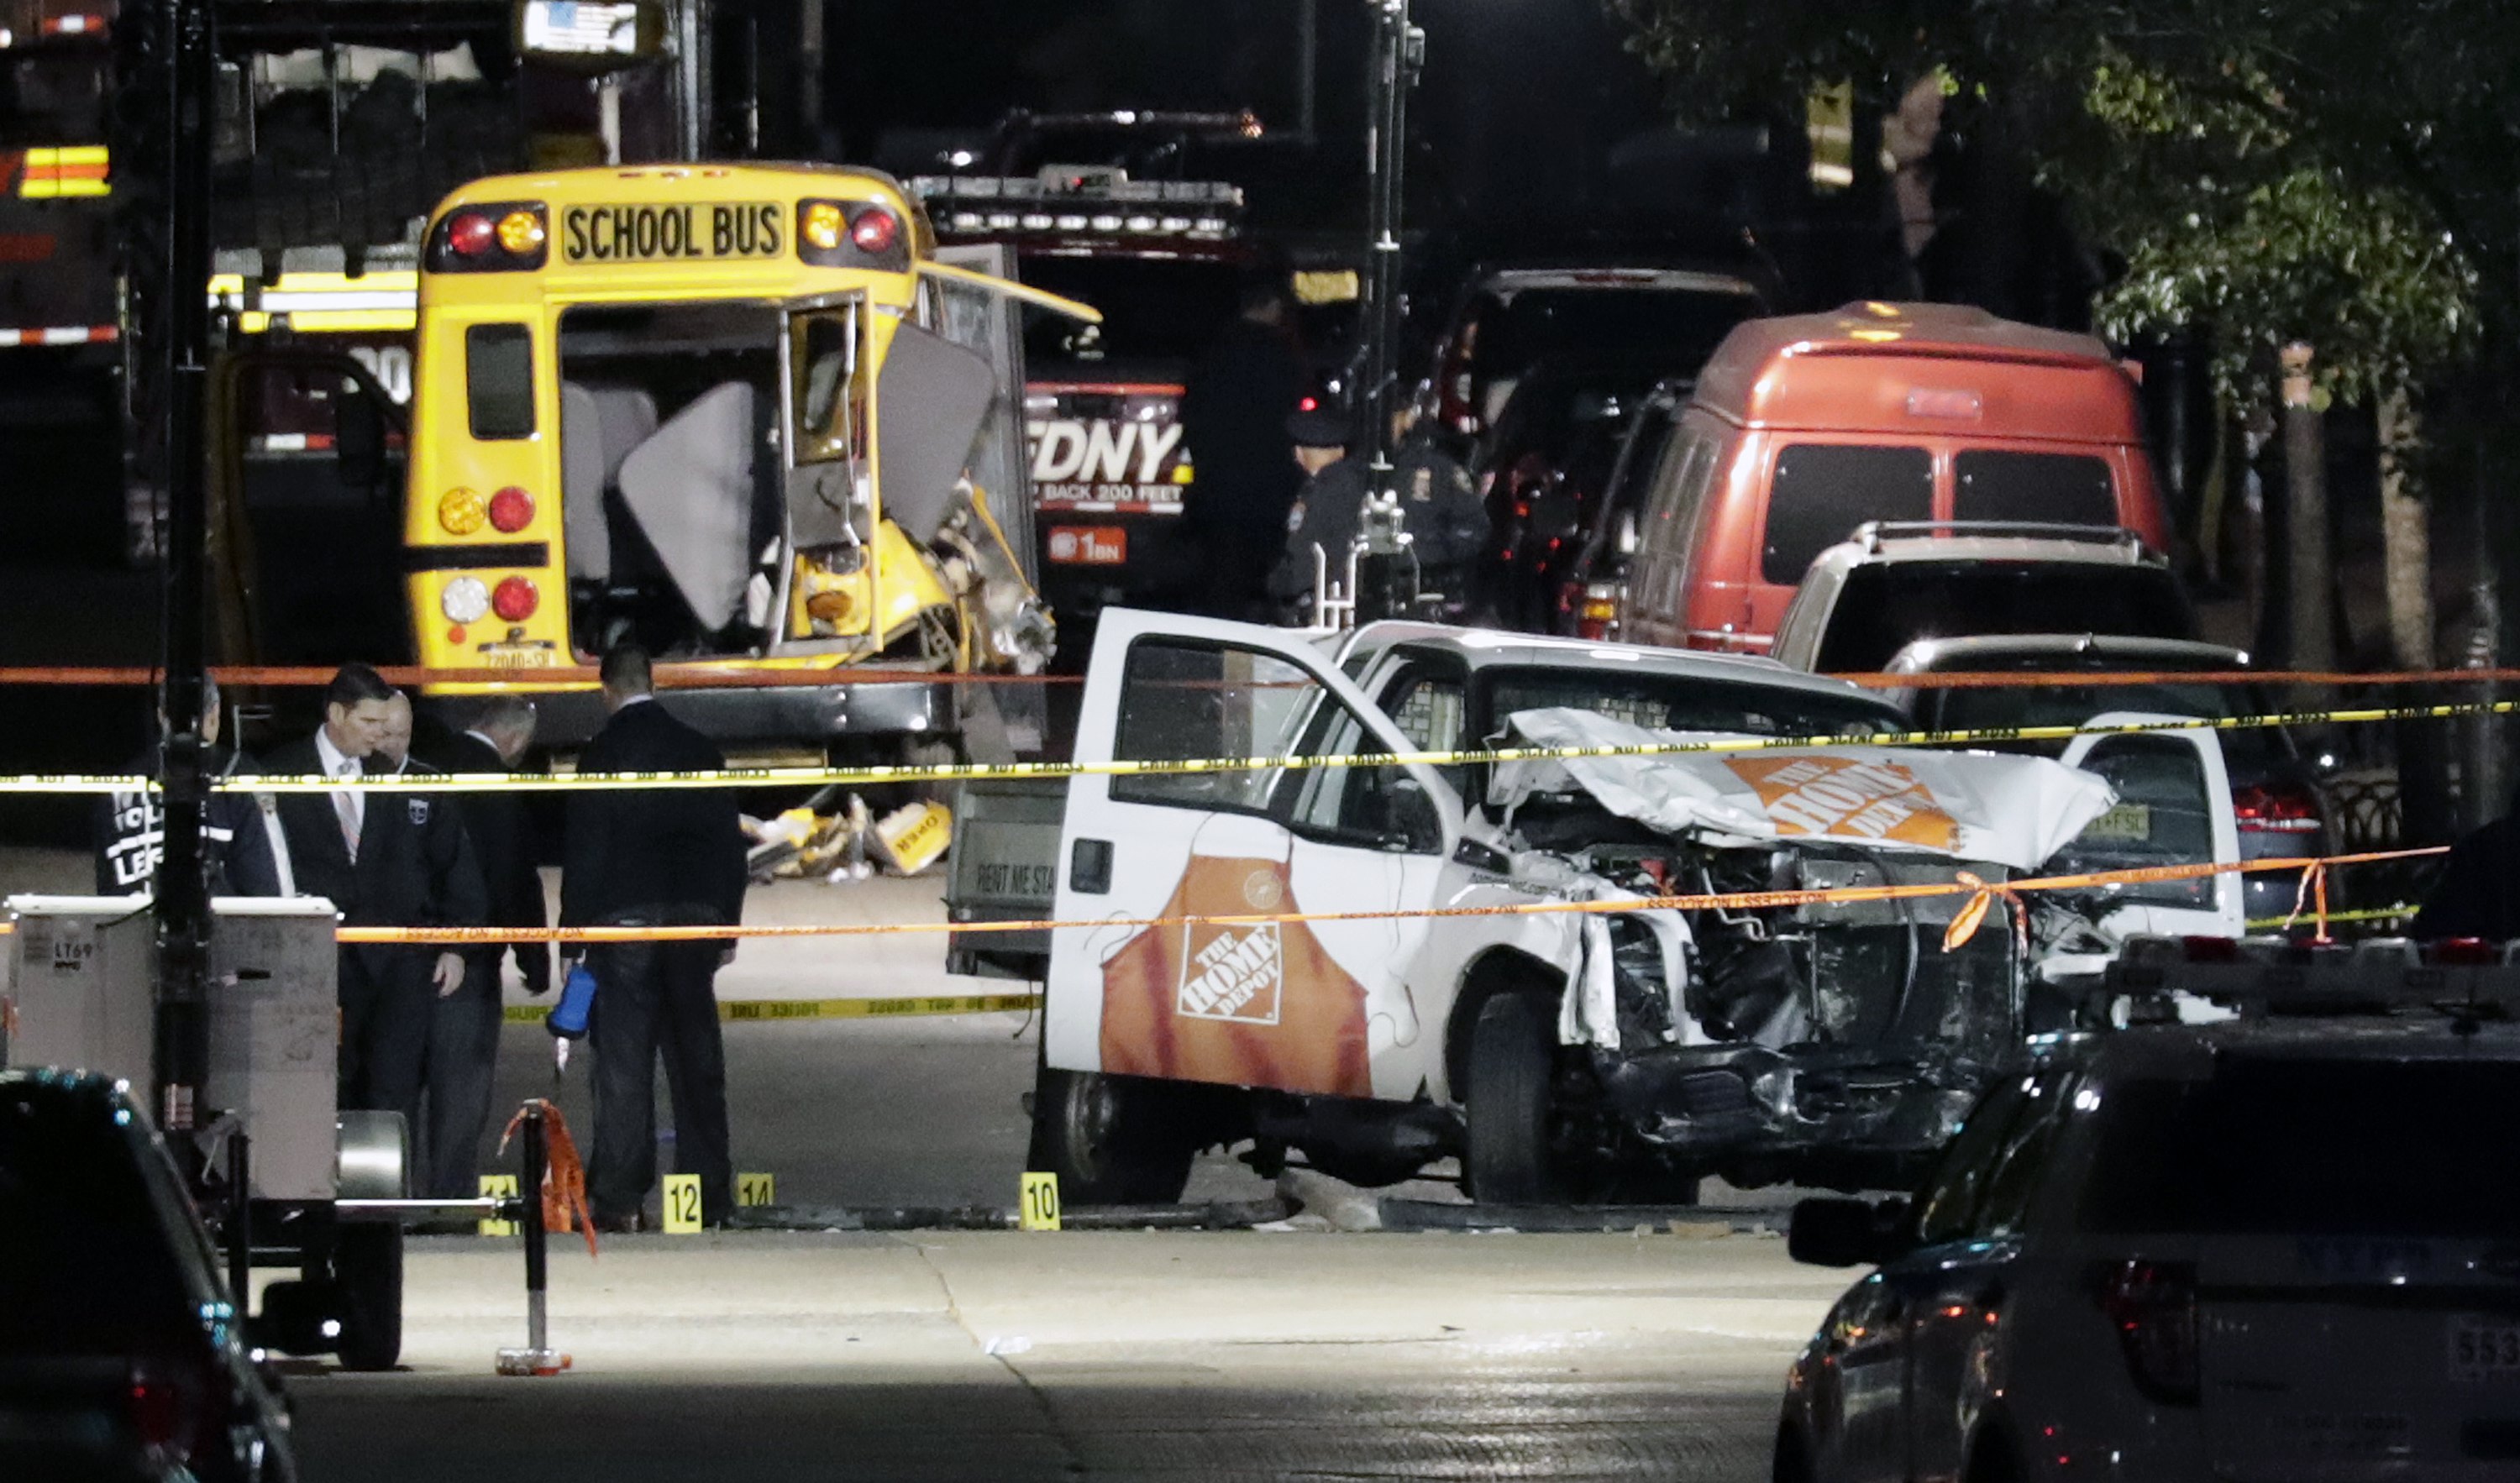 Το ISIS ανέλαβε την ευθύνη για την επίθεση στη Νέα Υόρκη